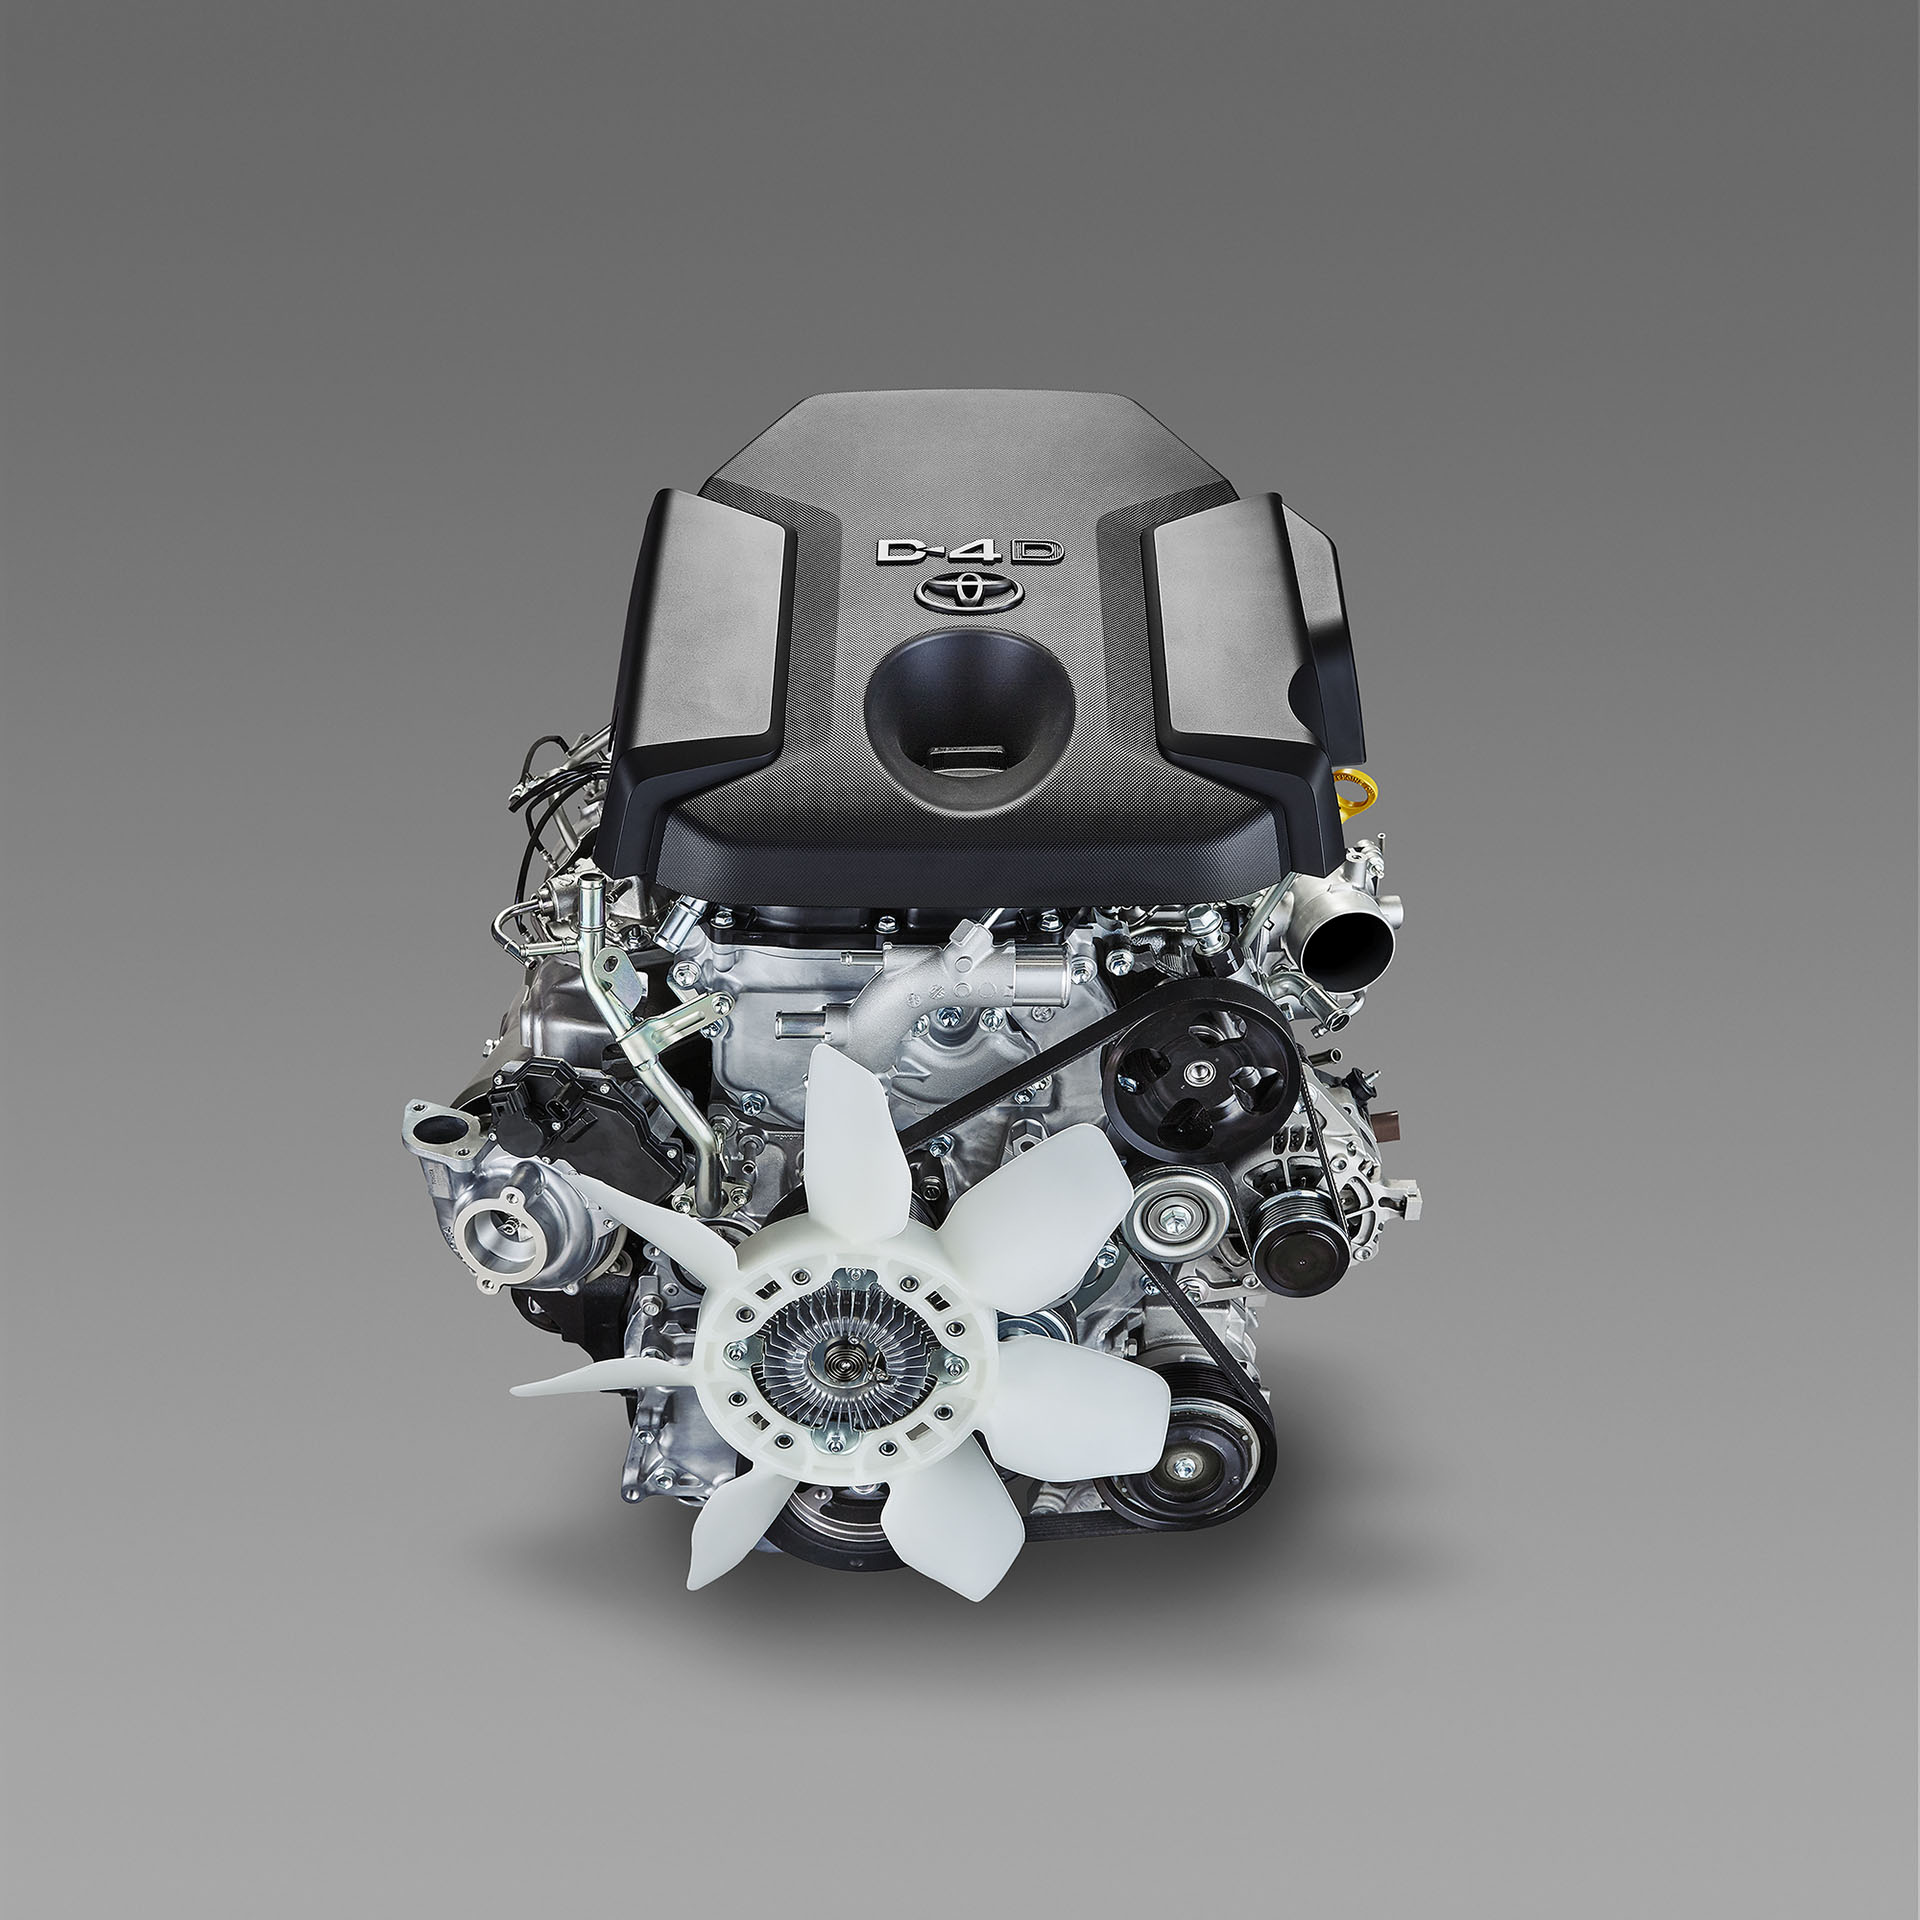 Nowatorskie turbodoładowane silniki wysokoprężne do samochodów terenowych Toyoty 